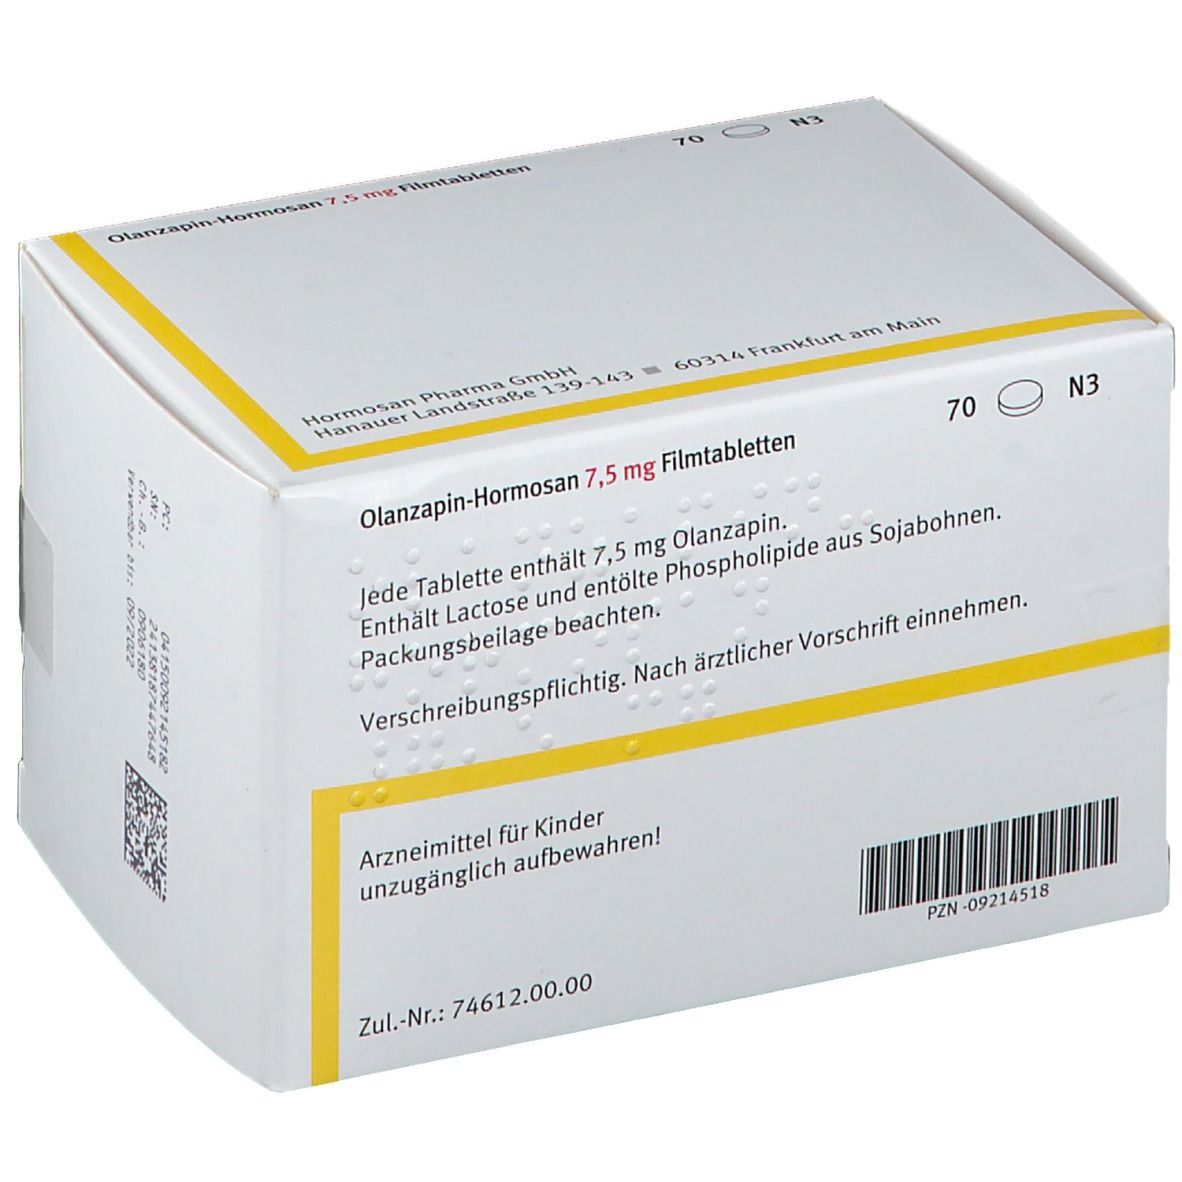 Olanzapin-Hormosan 7,5 mg